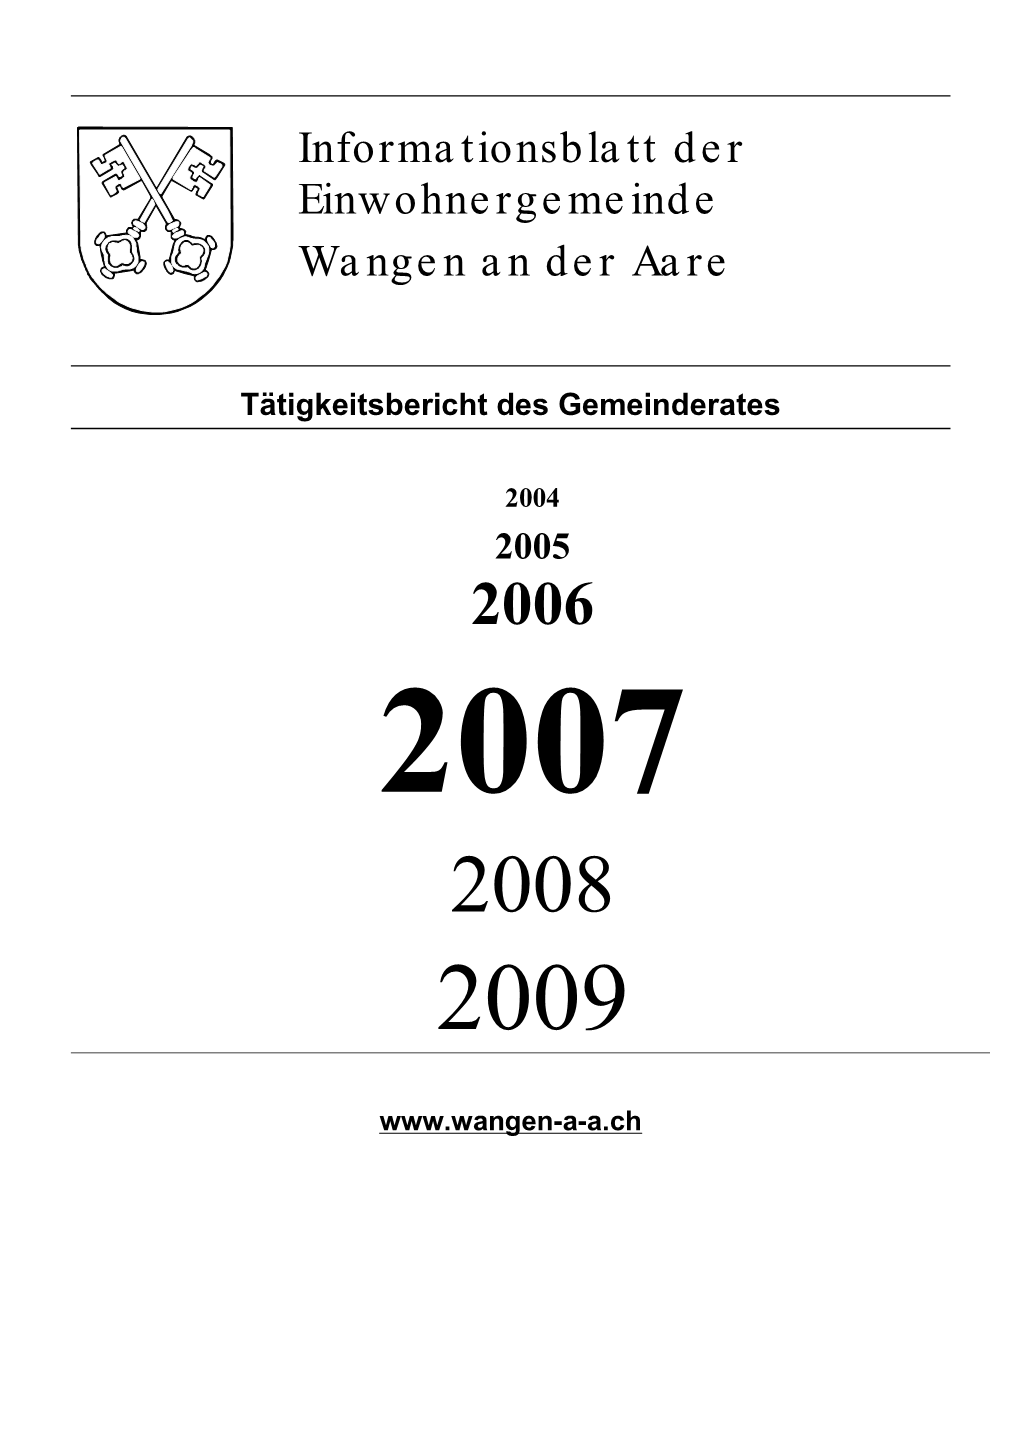 Tätigkeitsbericht 2007